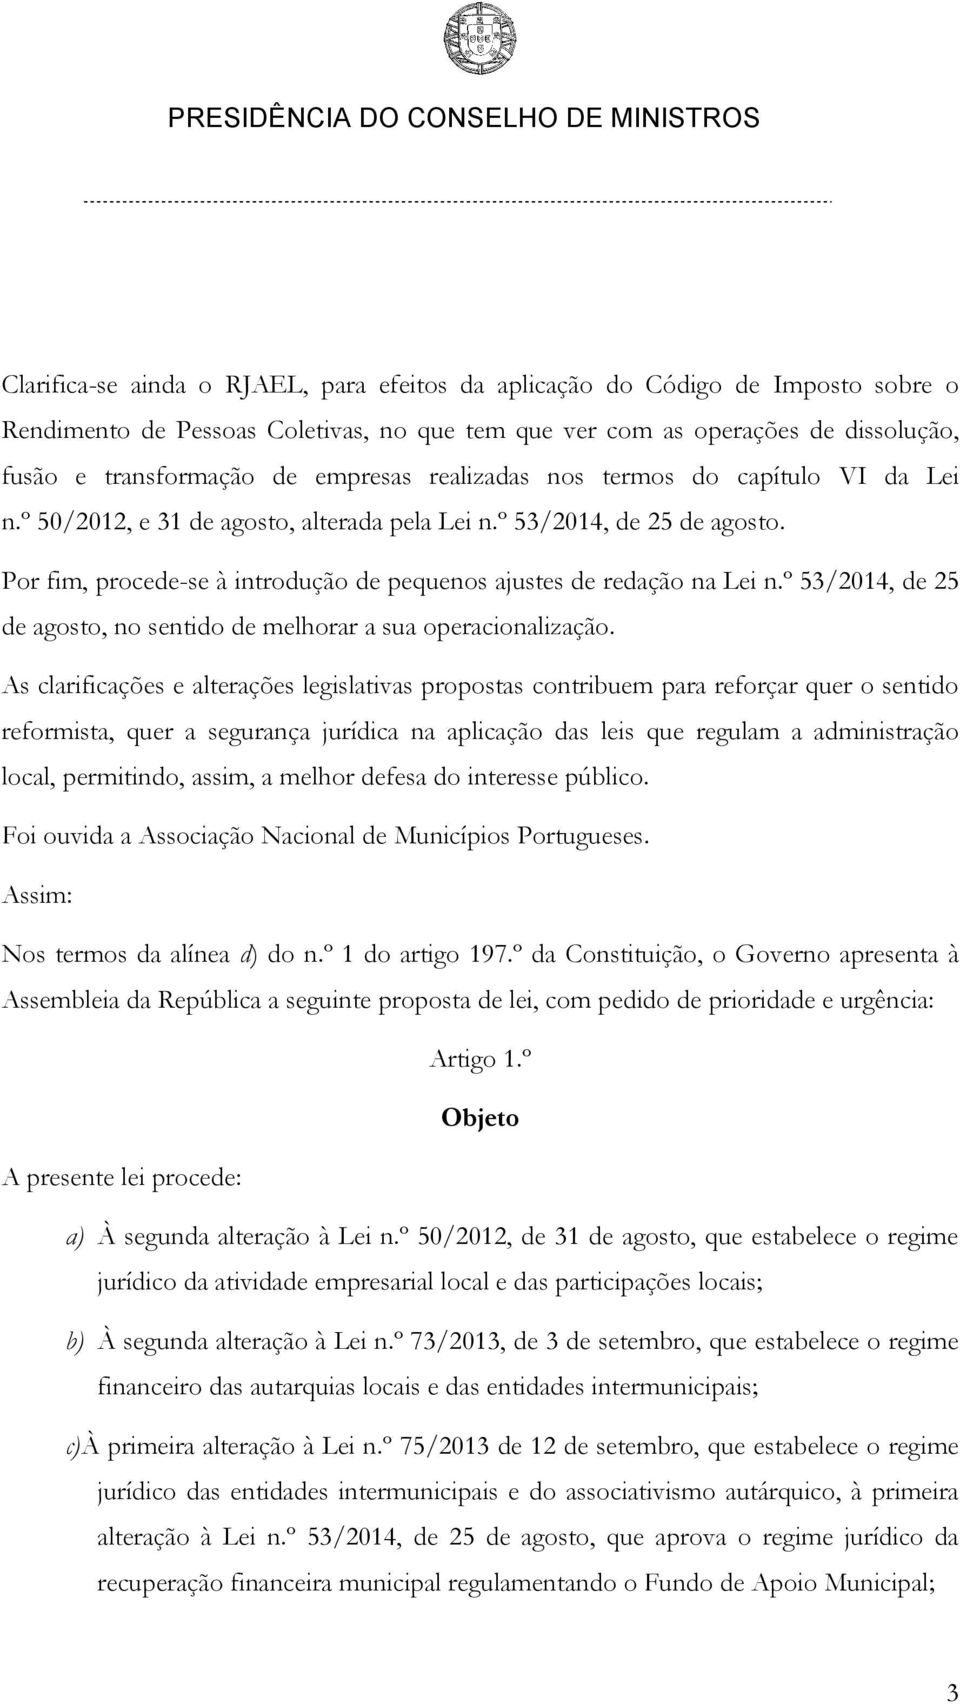 Por fim, procede-se à introdução de pequenos ajustes de redação na Lei n.º 53/2014, de 25 de agosto, no sentido de melhorar a sua operacionalização.